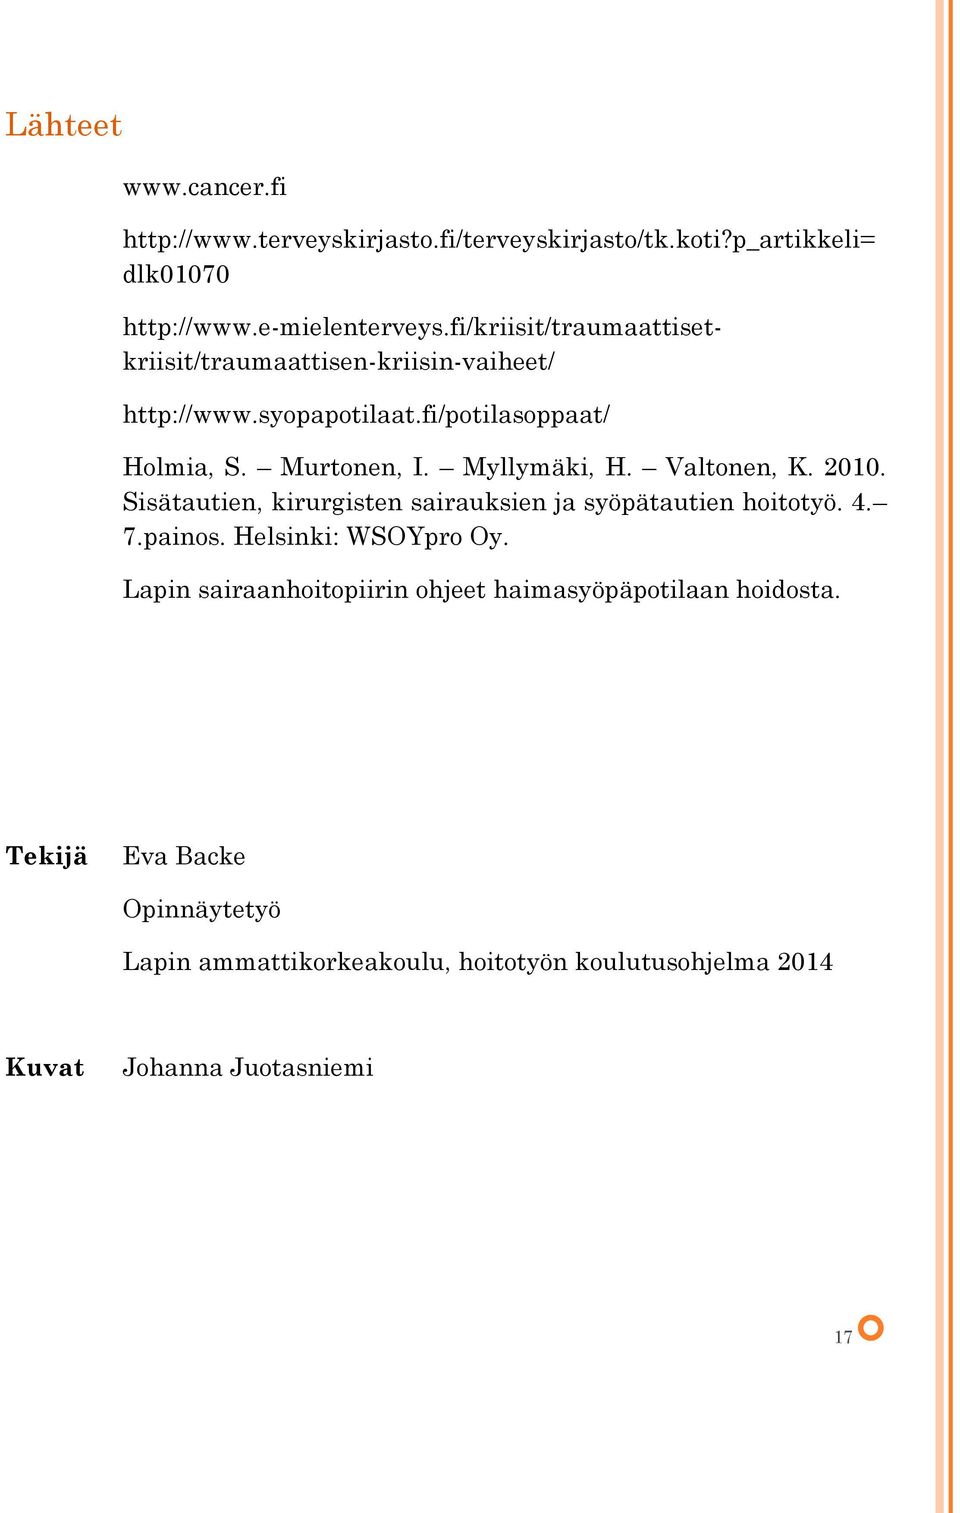 Myllymäki, H. Valtonen, K. 2010. Sisätautien, kirurgisten sairauksien ja syöpätautien hoitotyö. 4. 7.painos. Helsinki: WSOYpro Oy.